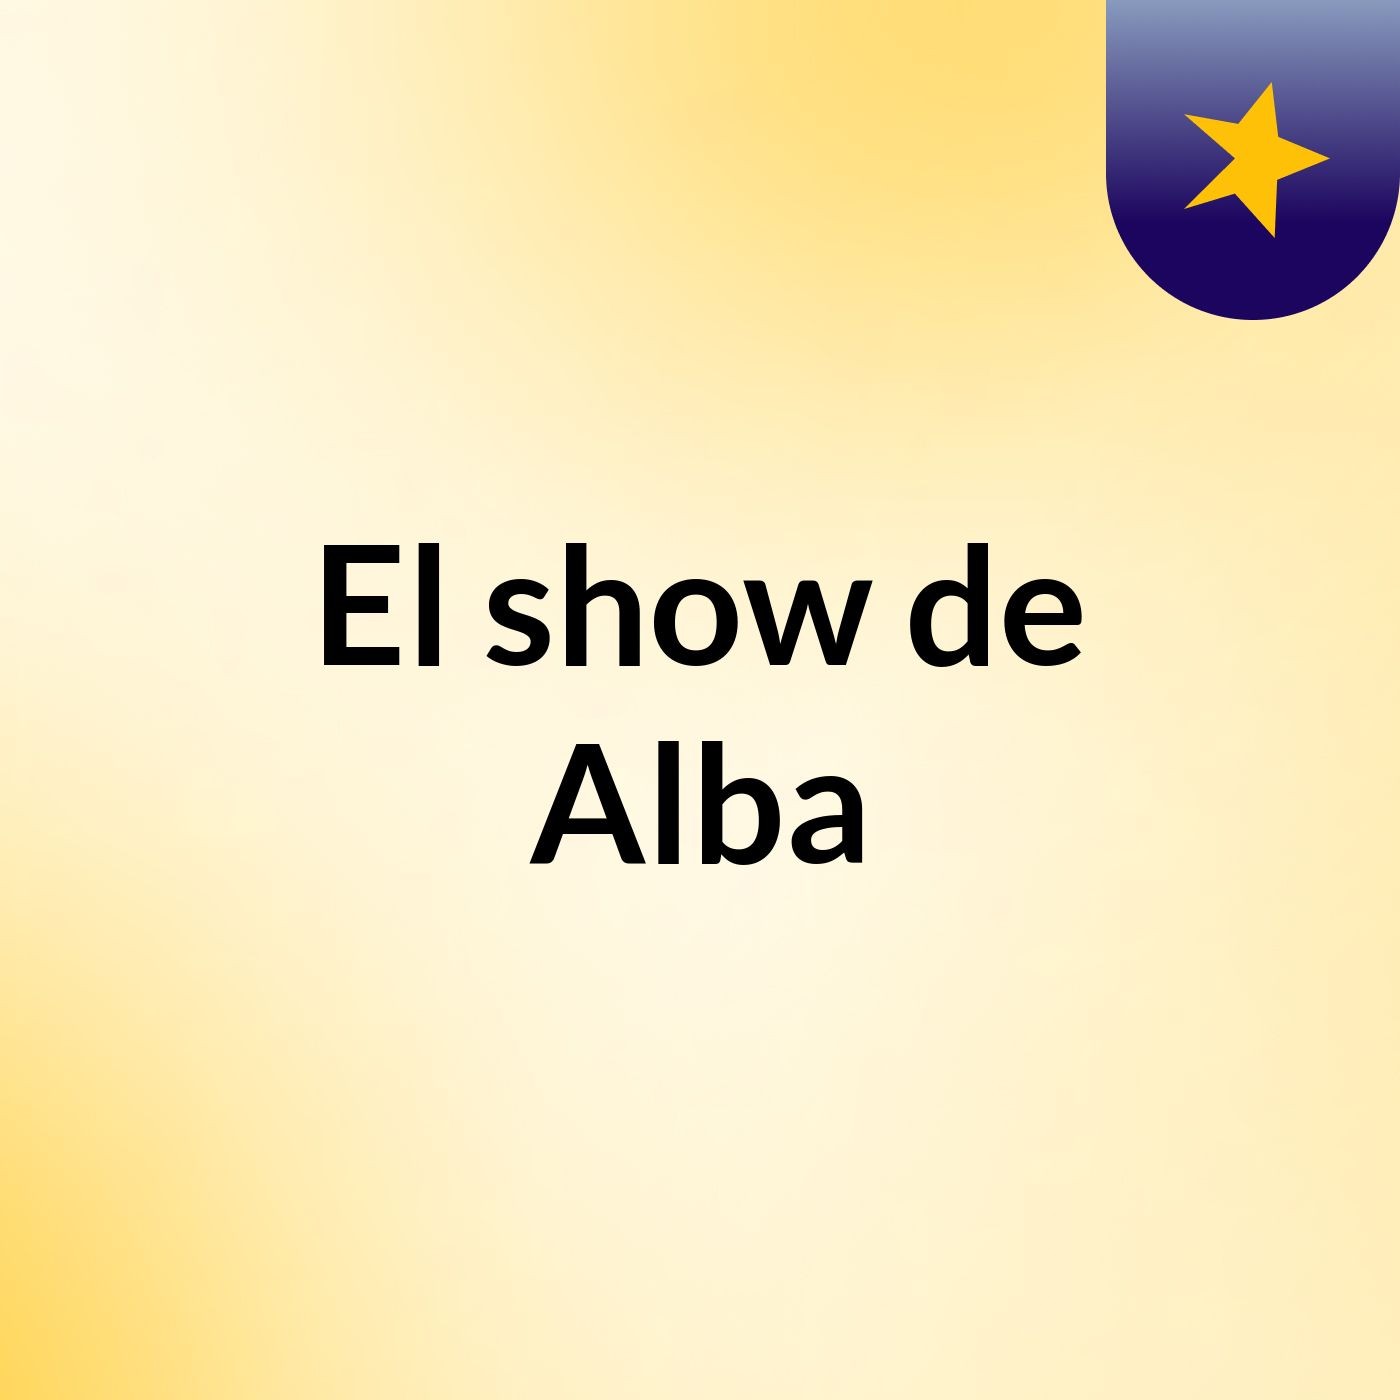 El show de Alba